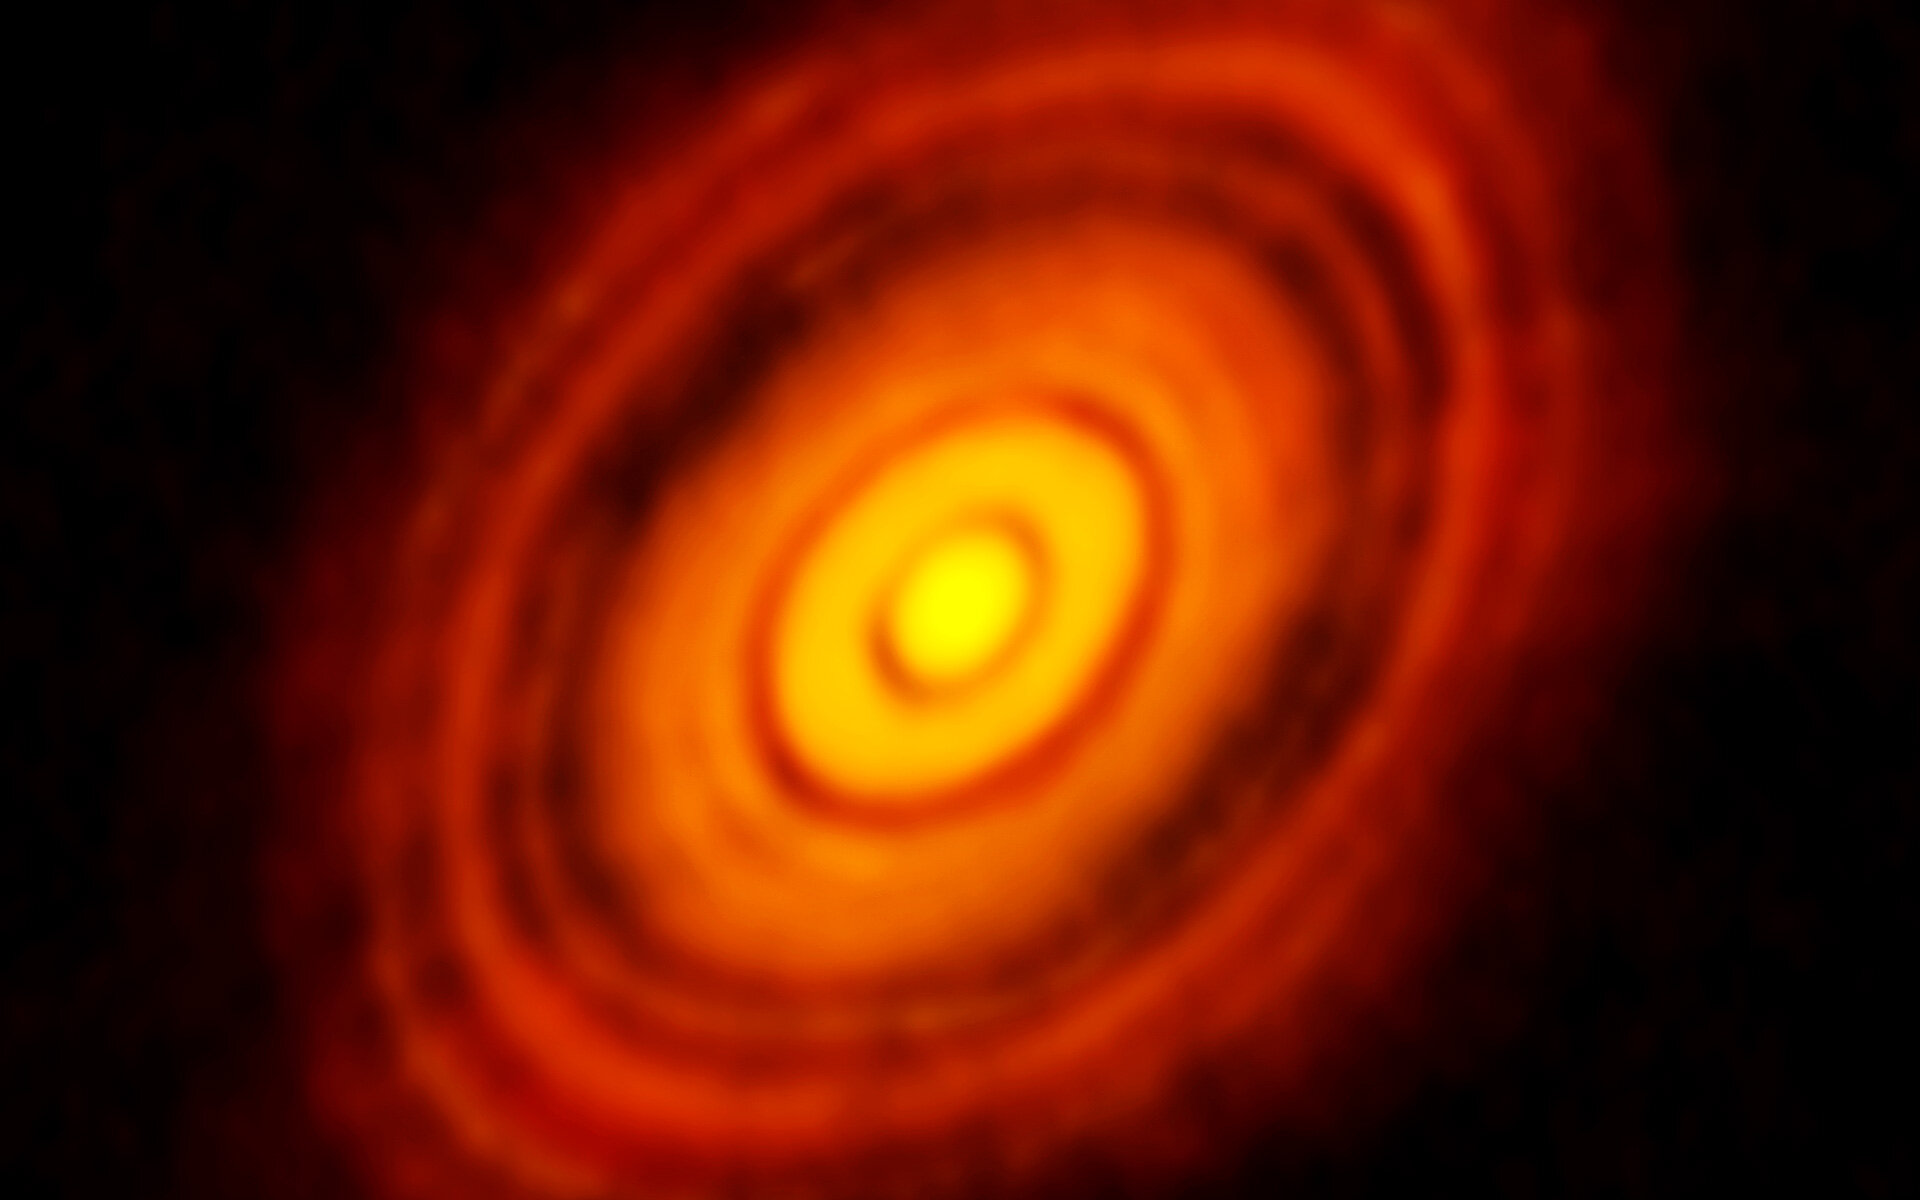 Esta es la imagen más nítida jamás tomada por ALMA, más nítida que la que se logra habitualmente en luz visible con el Telescopio Espacial Hubble de la NASA / ESA. Muestra el disco protoplanetario que rodea a la joven estrella HL Tauri. Estas nuevas observaciones de ALMA revelan subestructuras dentro del disco que nunca antes se habían visto e incluso muestran las posibles posiciones de los planetas que se forman en los parches oscuros dentro del sistema. Crédito: ALMA (ESO / NAOJ / NRAO)